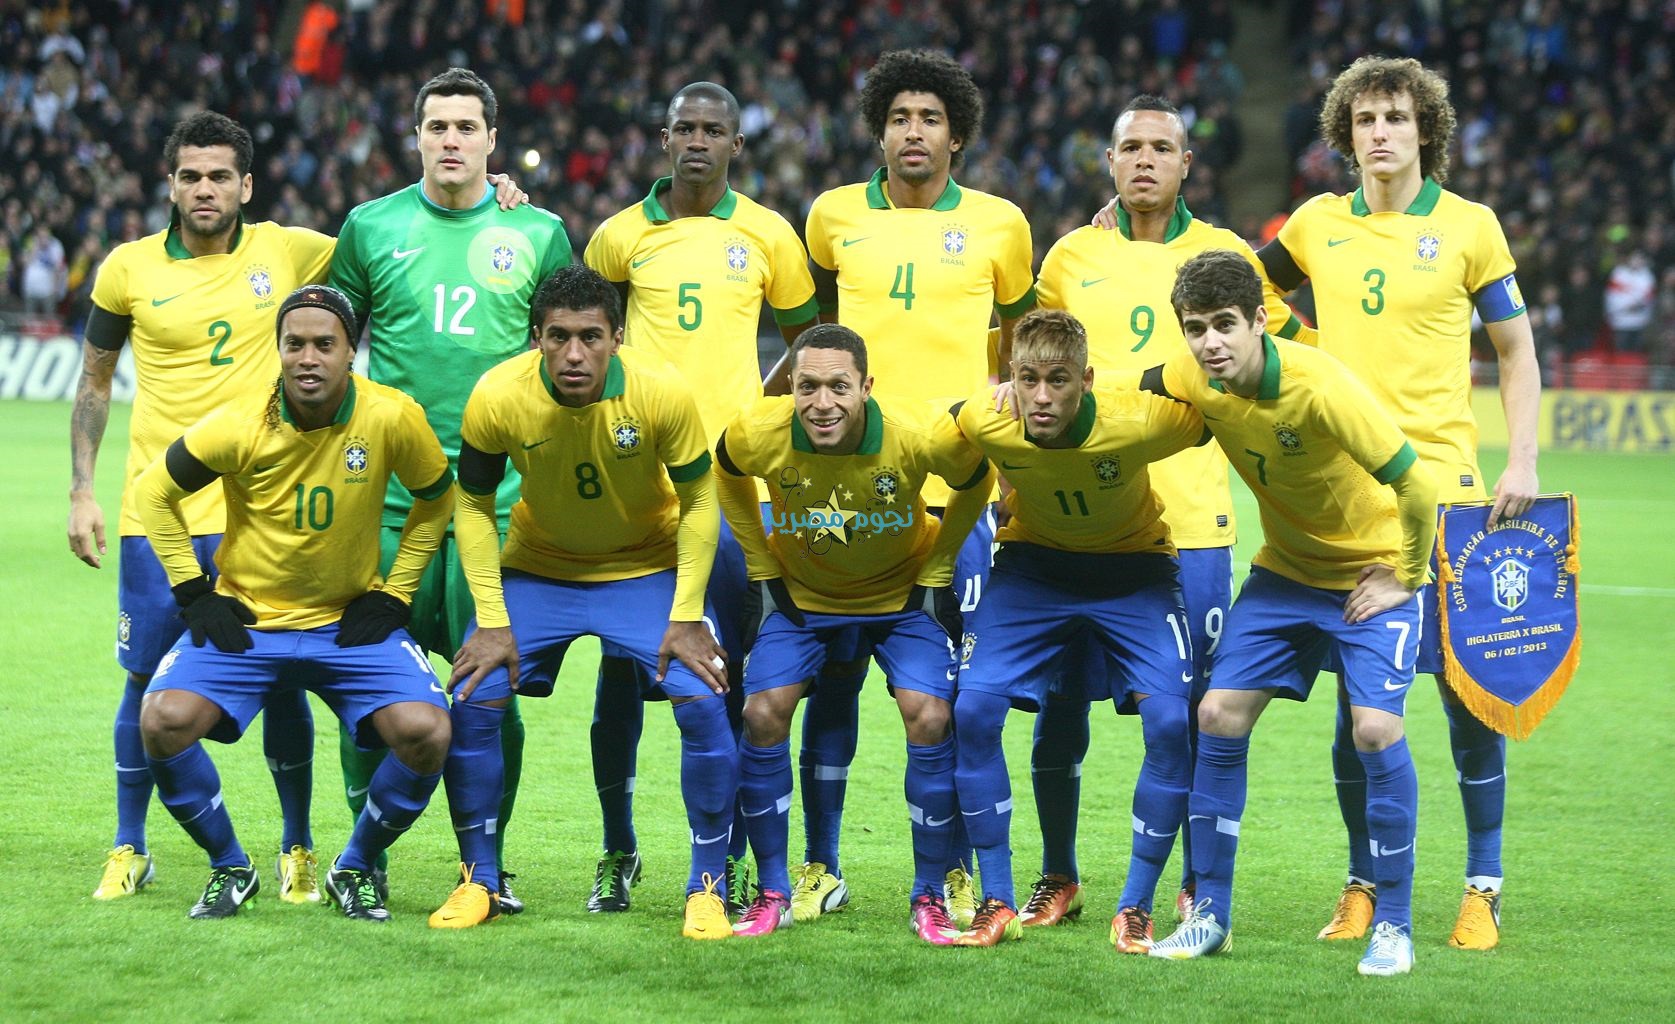 صور المنتخب البرازيلي في كأس العالم 2014 بالبرازيل